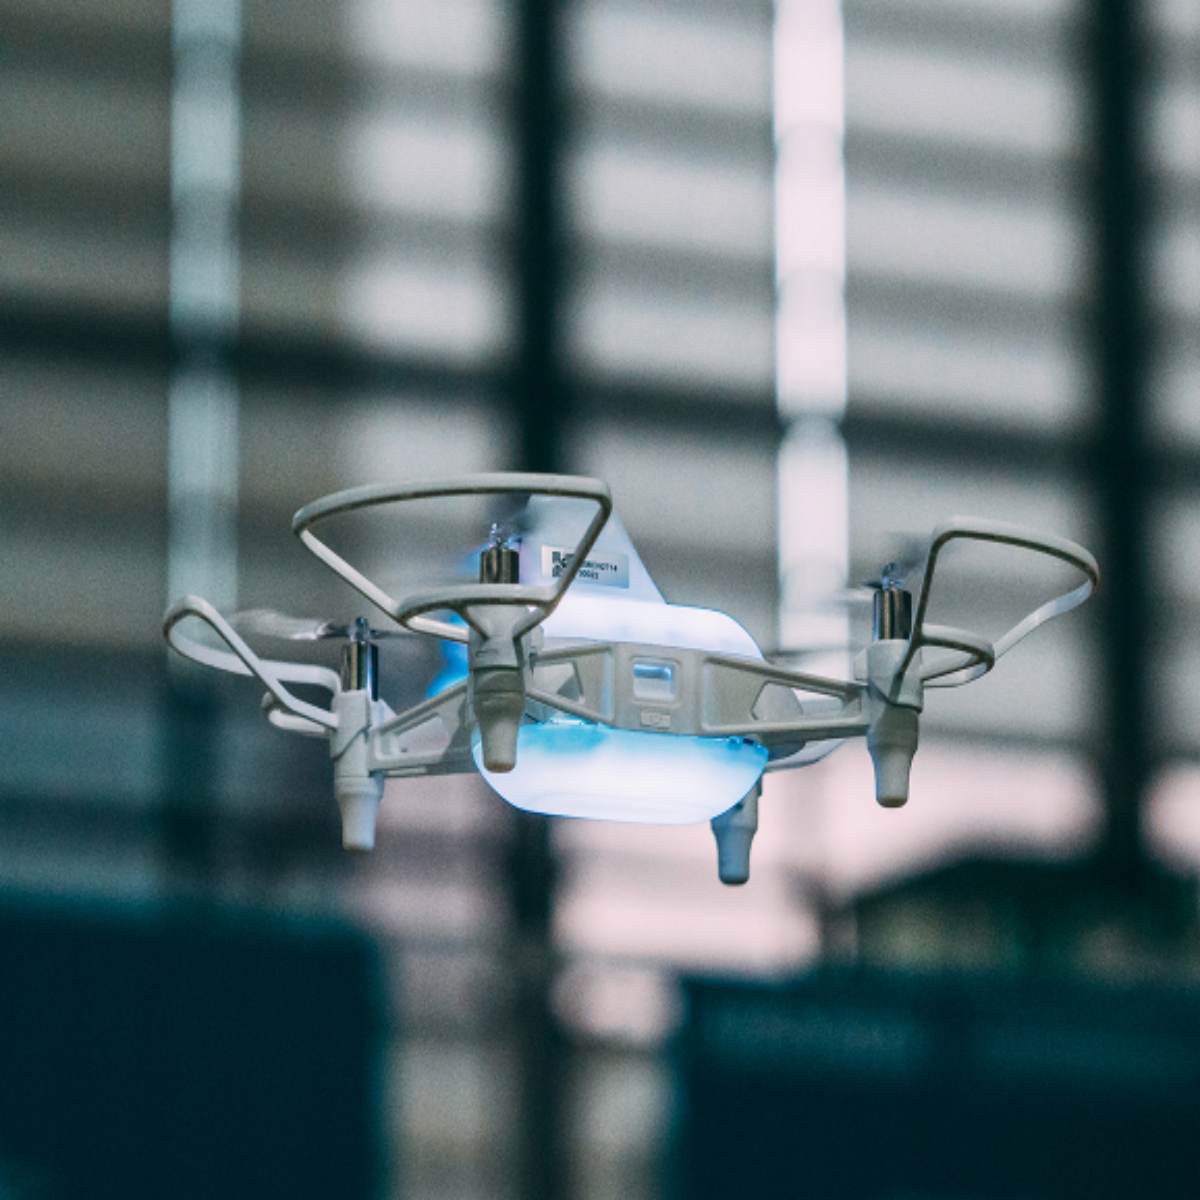 O que é o drone FYLO MINI?